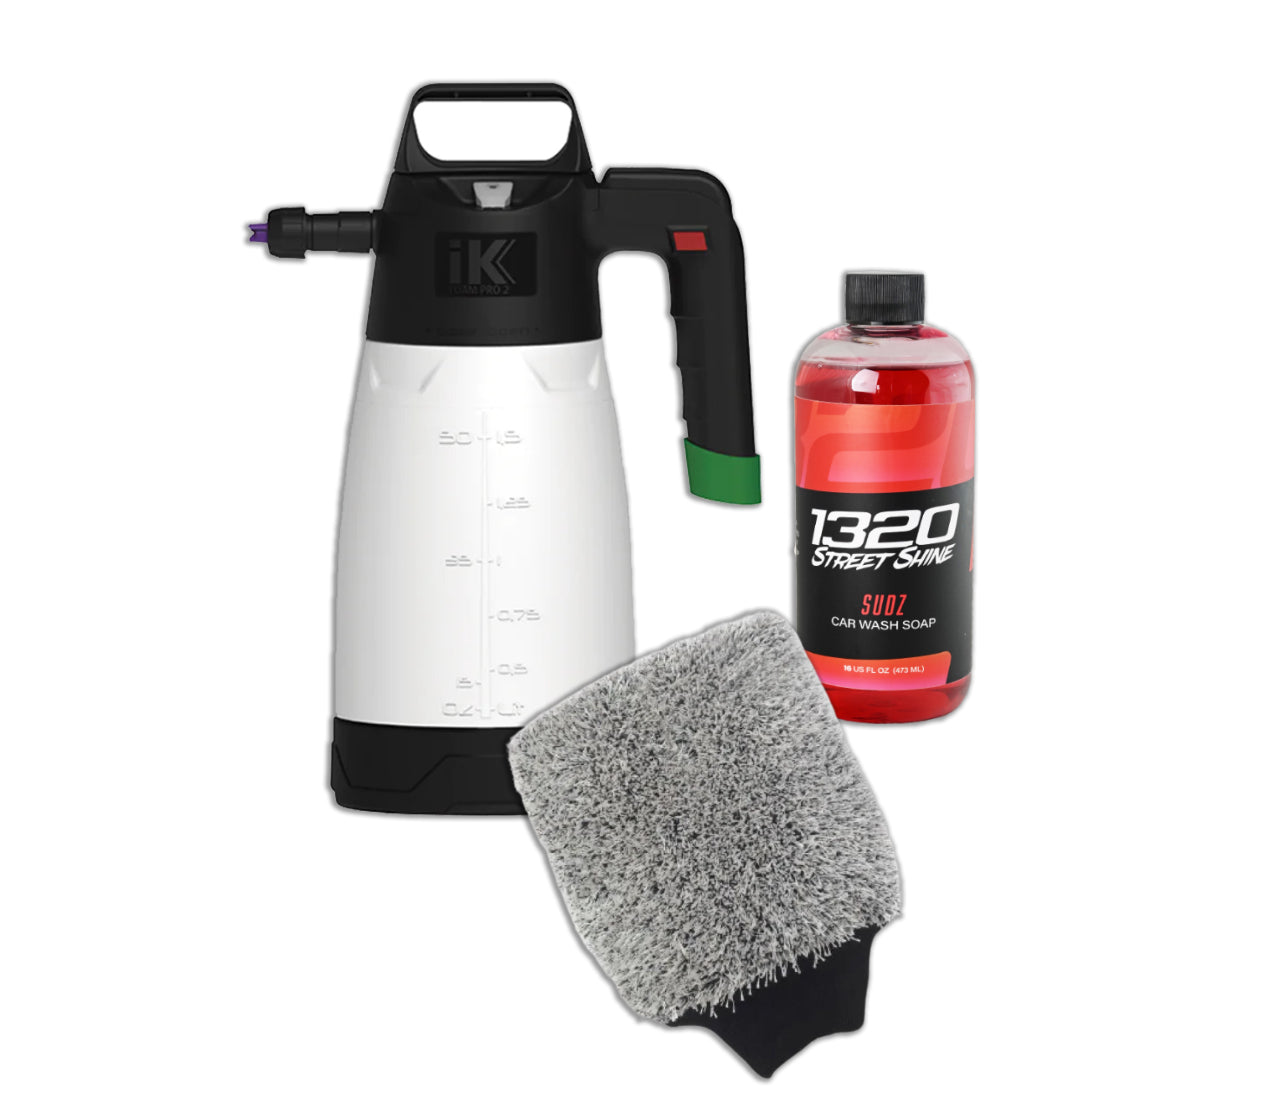 IK Sprayer Foam Pro 2 – DWrapStore